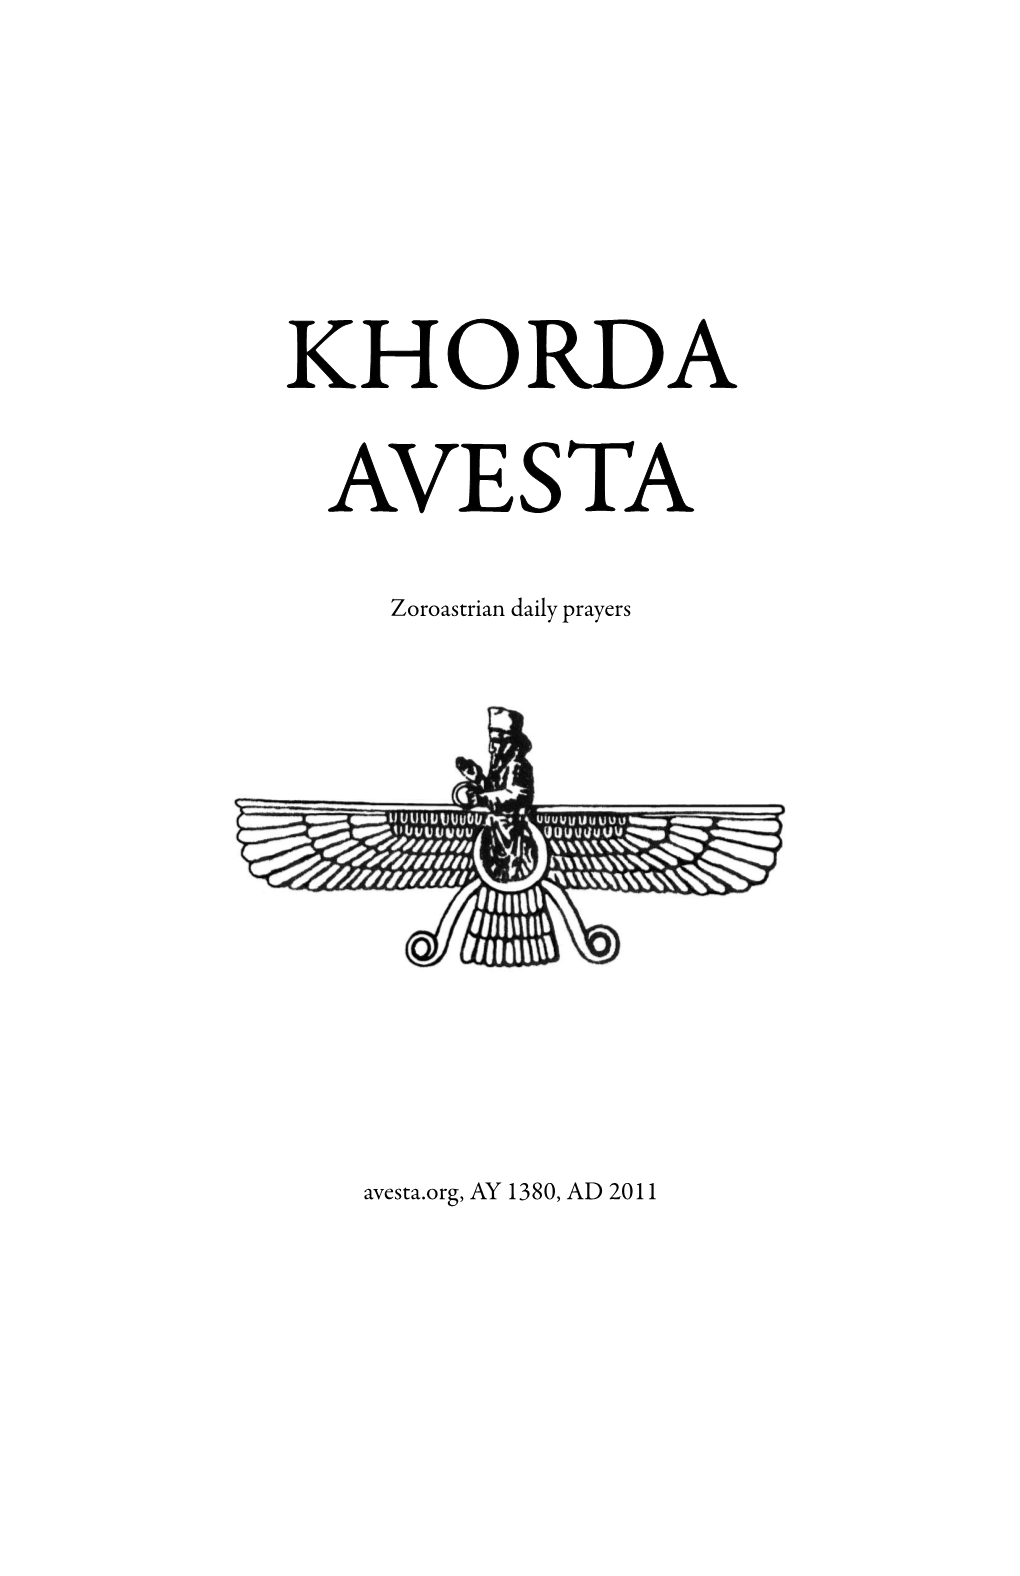 Khorda Avesta